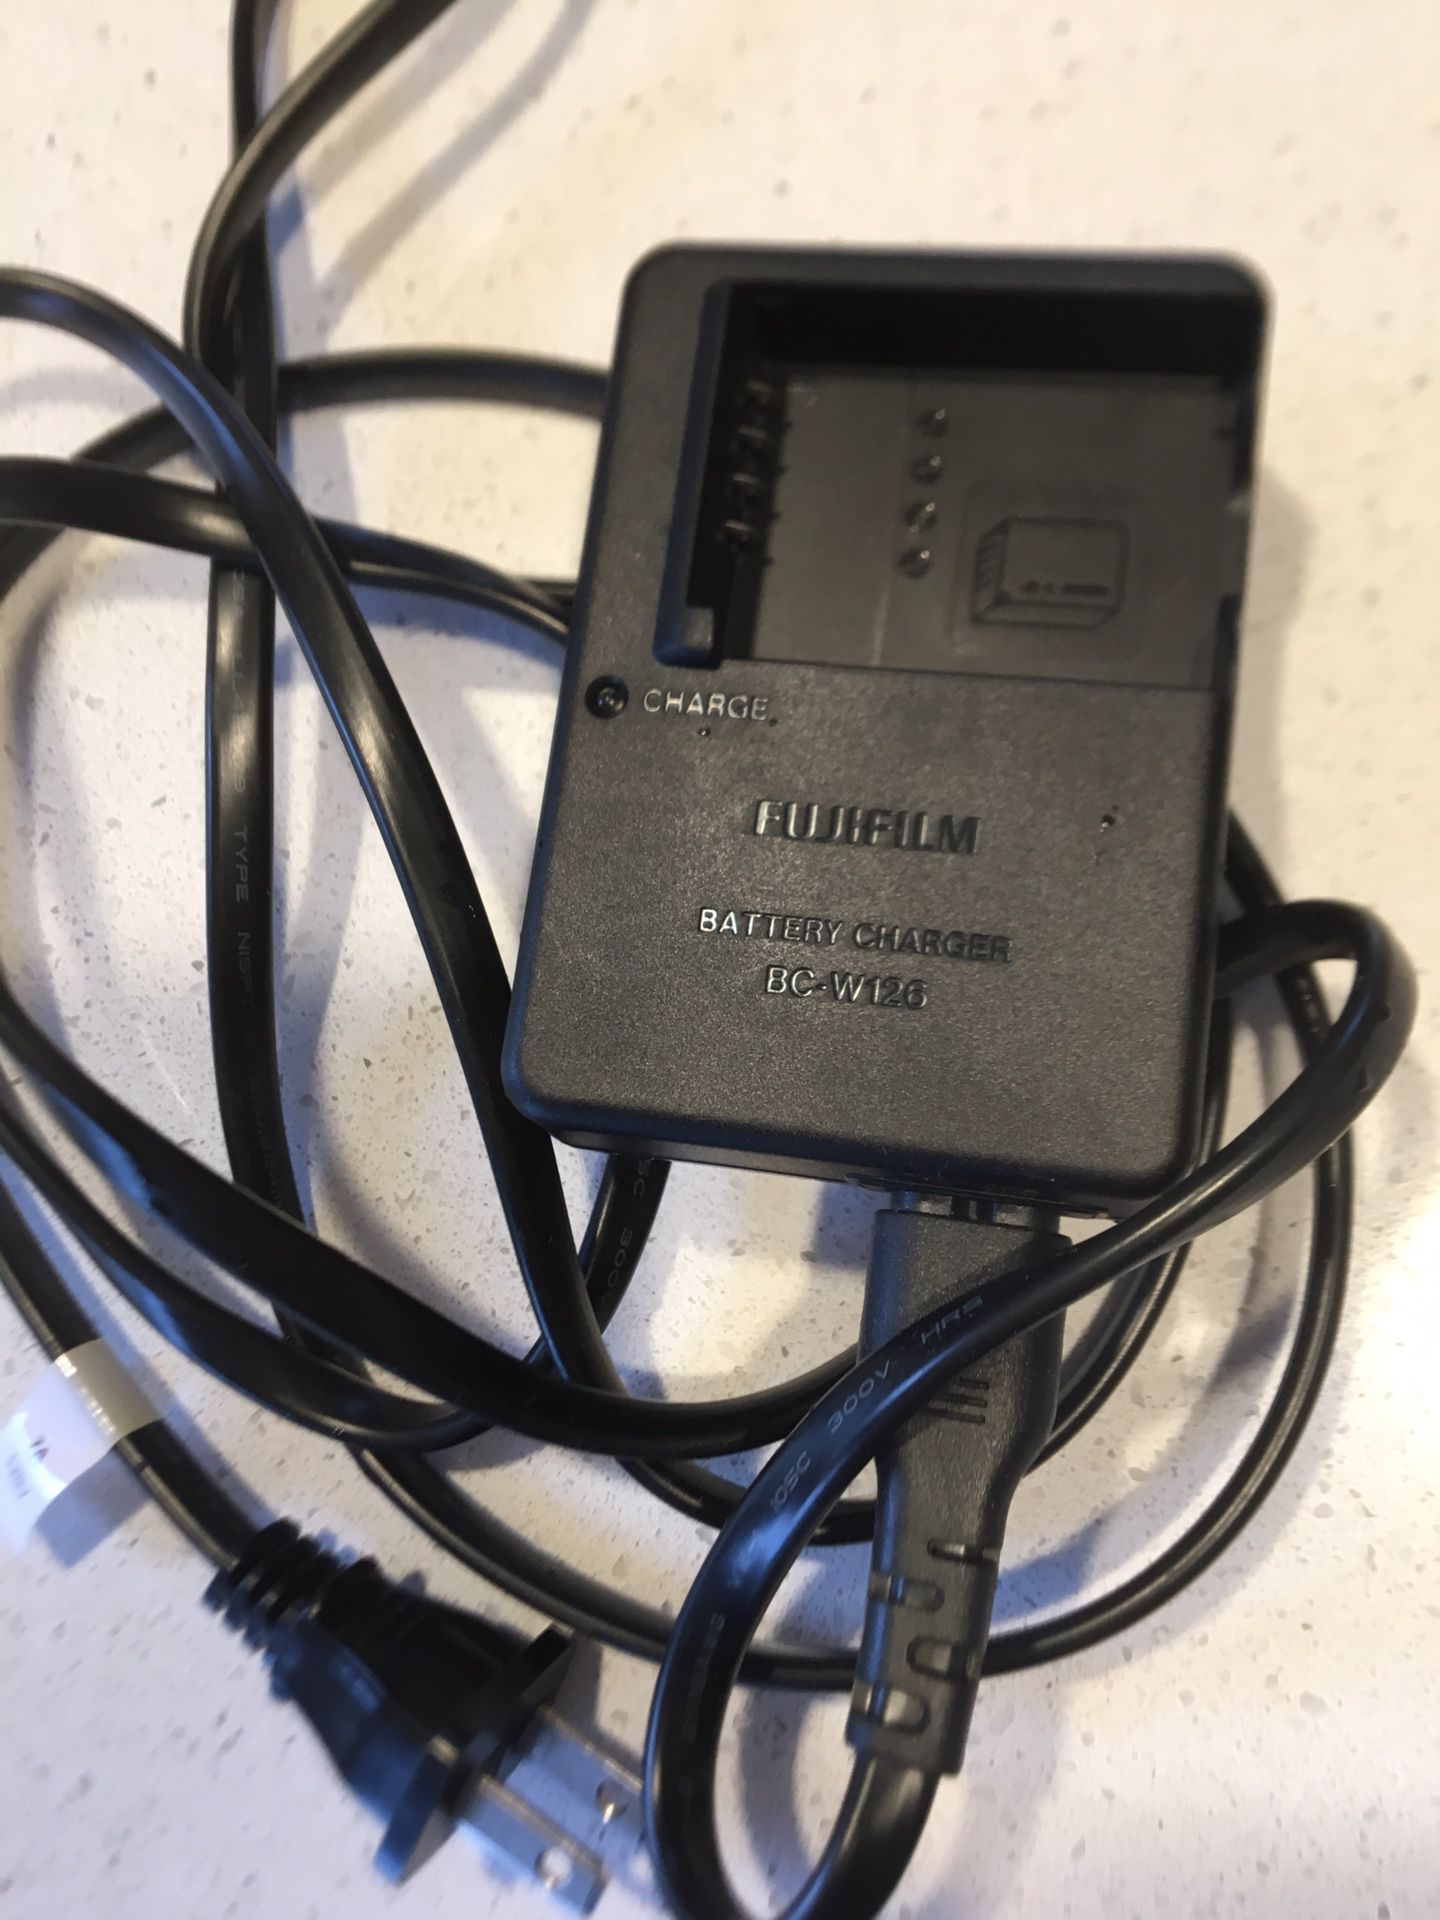 Fuji charger BC W-126